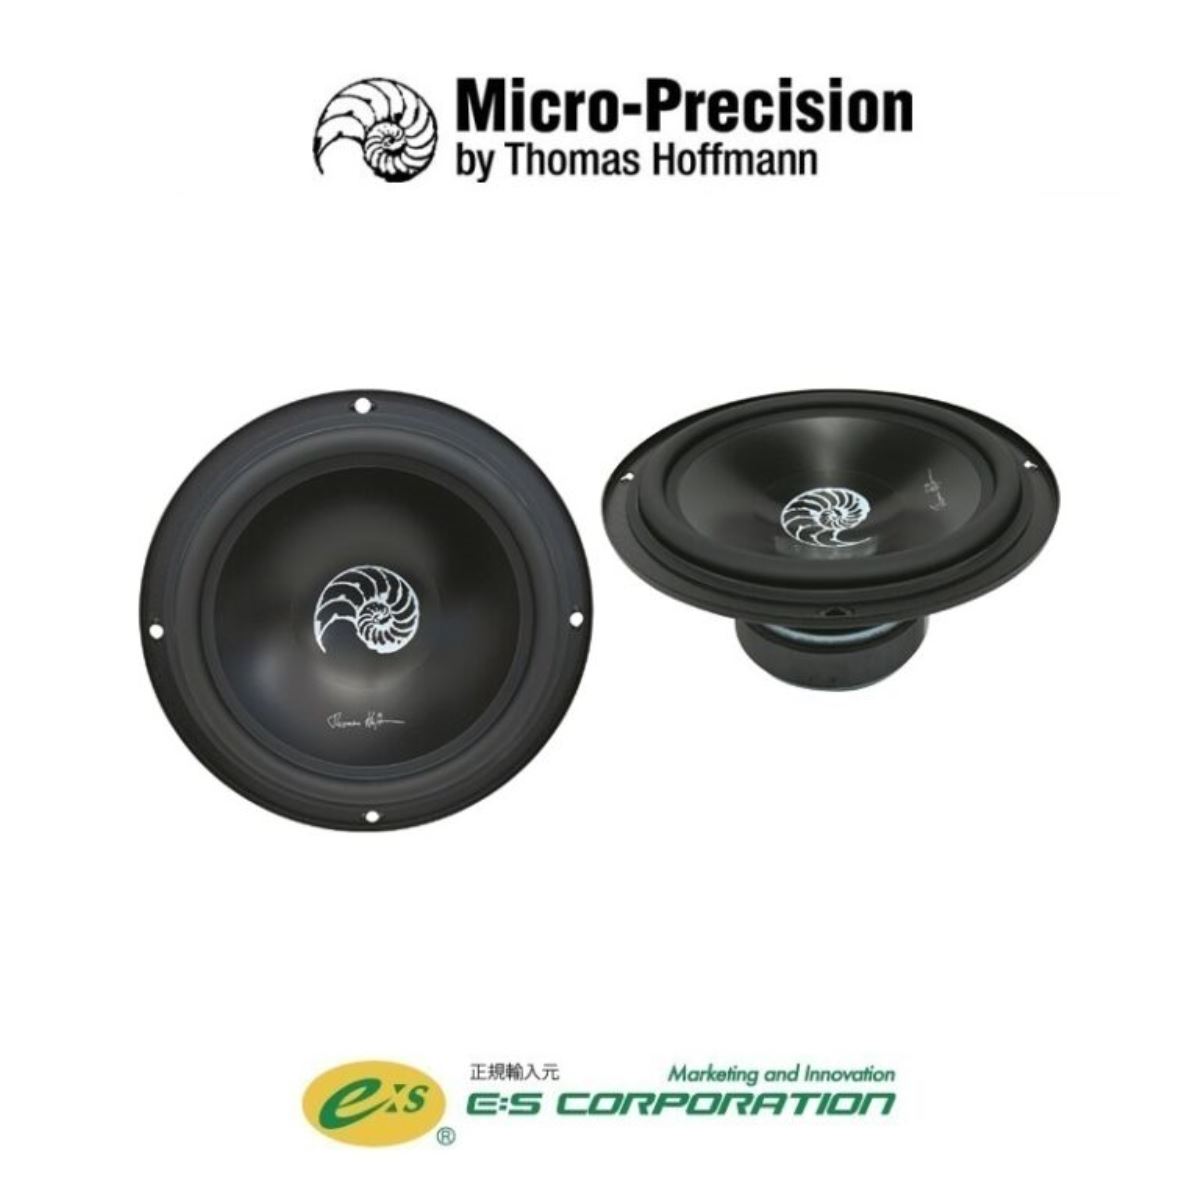 Micro-Precision 3.16 MK II -Black Edition-